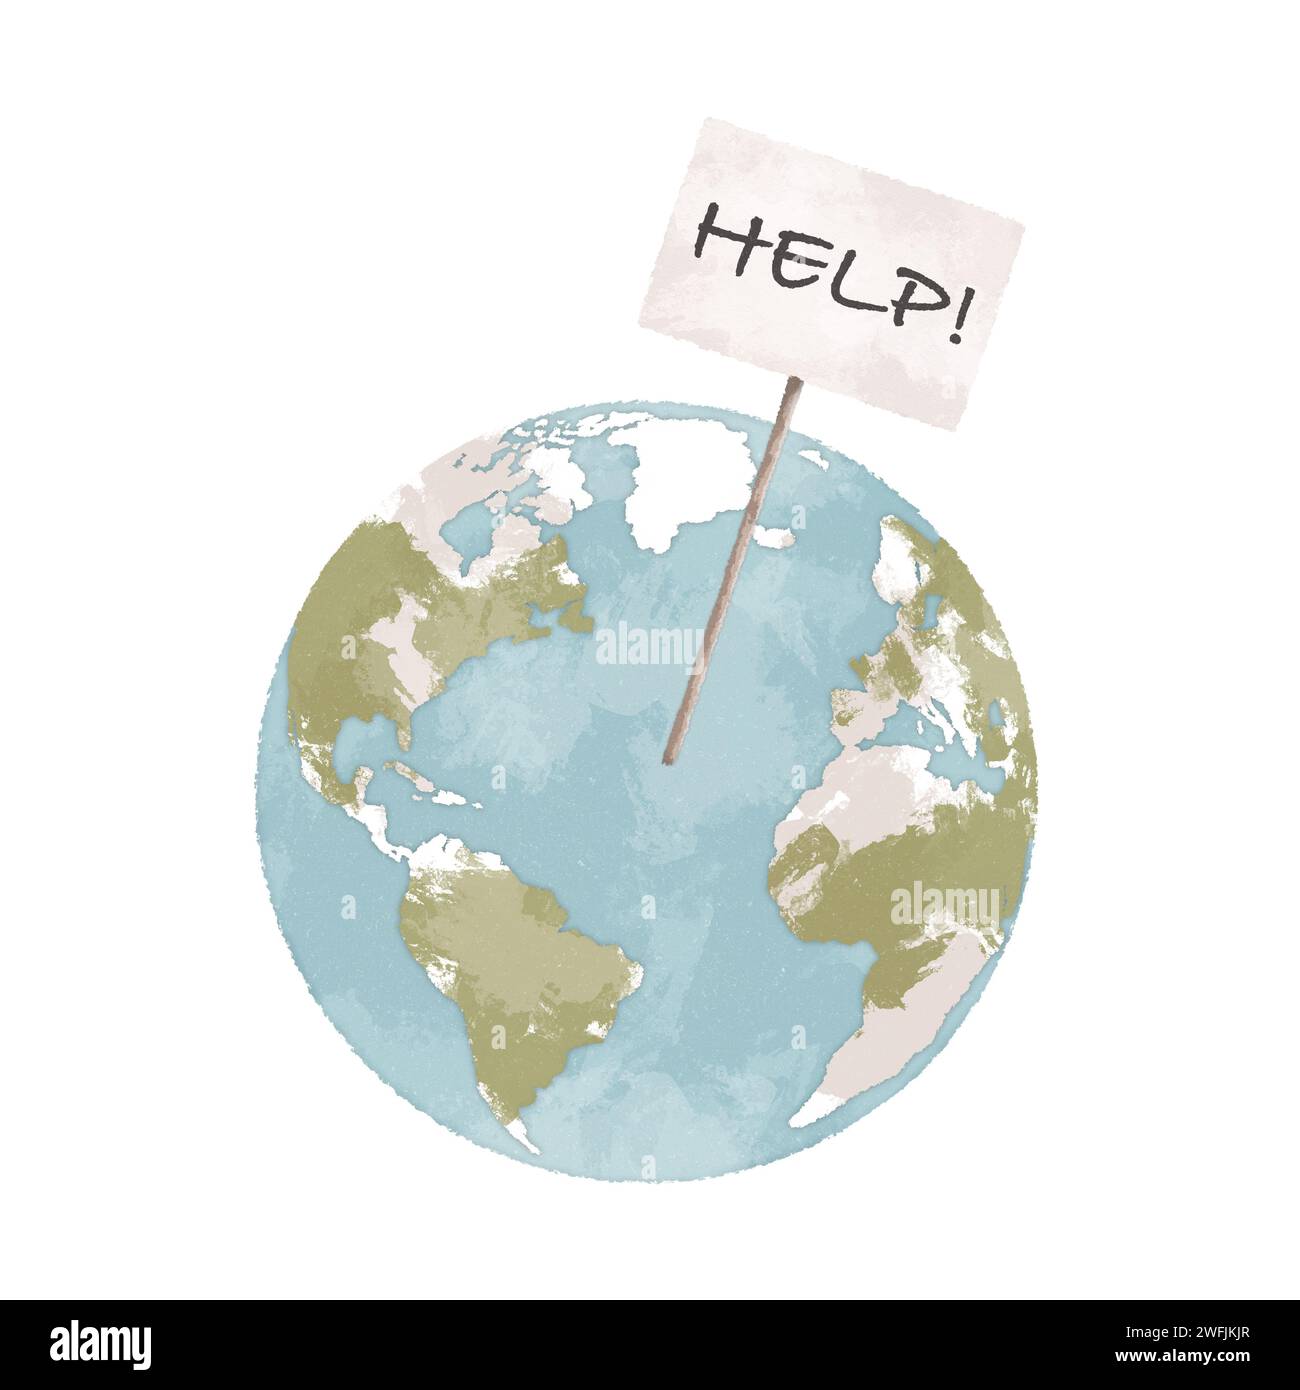 Planète Terre avec signe d'aide illustration dessinée à la main. Concept de changement climatique. Art du réchauffement climatique Défis environnementaux concept art Banque D'Images